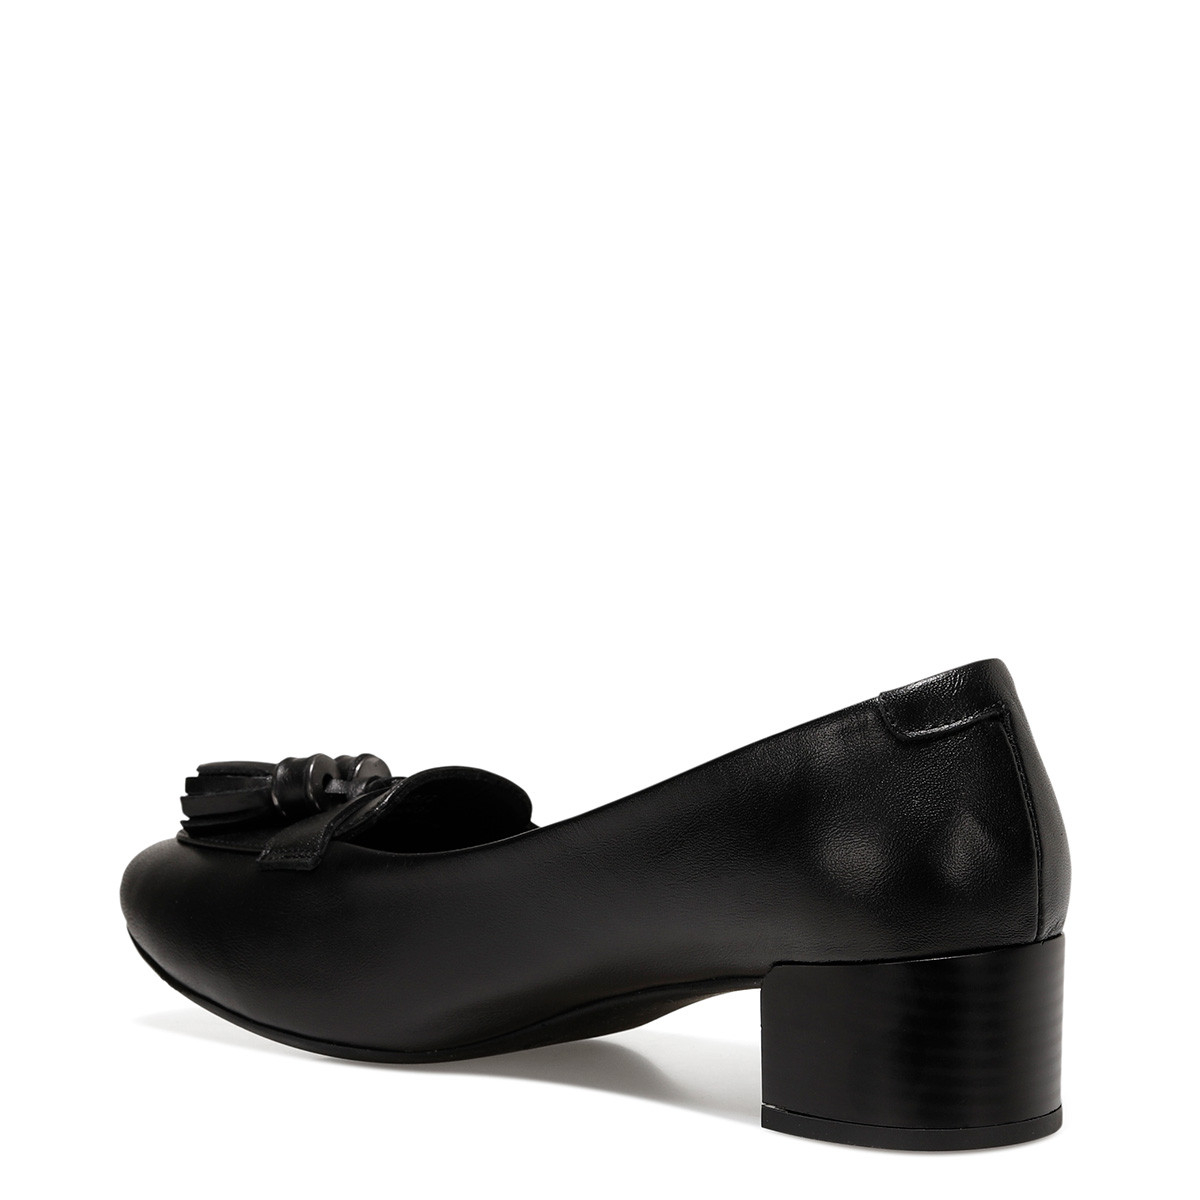 Nine West MOSSE2 Siyah Kadın Klasik Topuklu Ayakkabı. 6